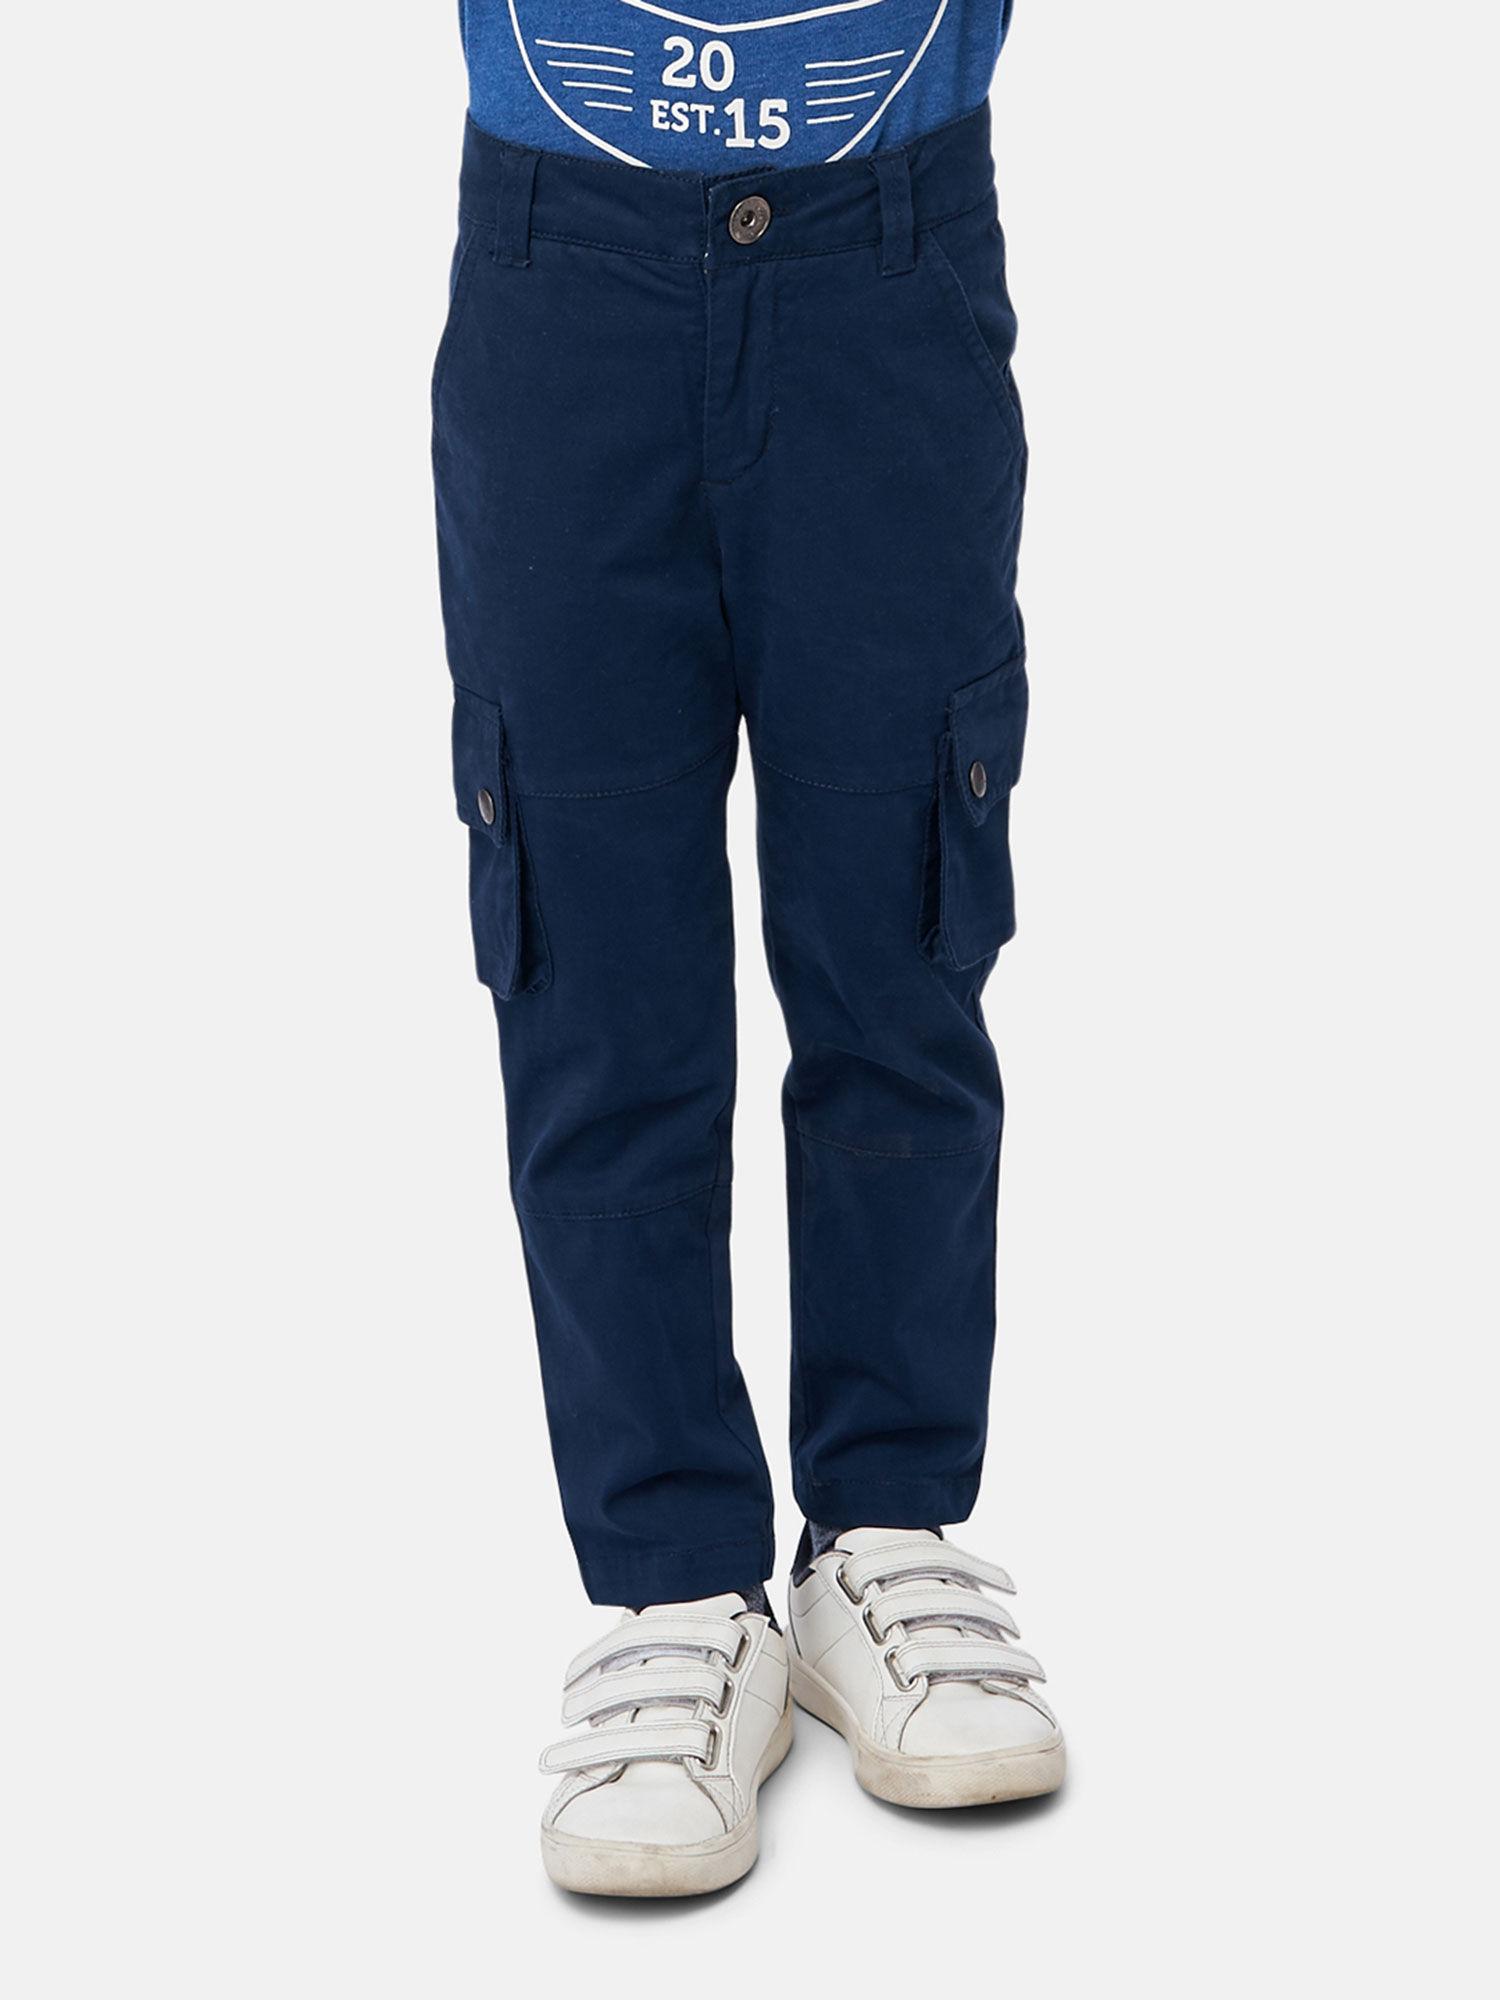 navy-blue-trouser